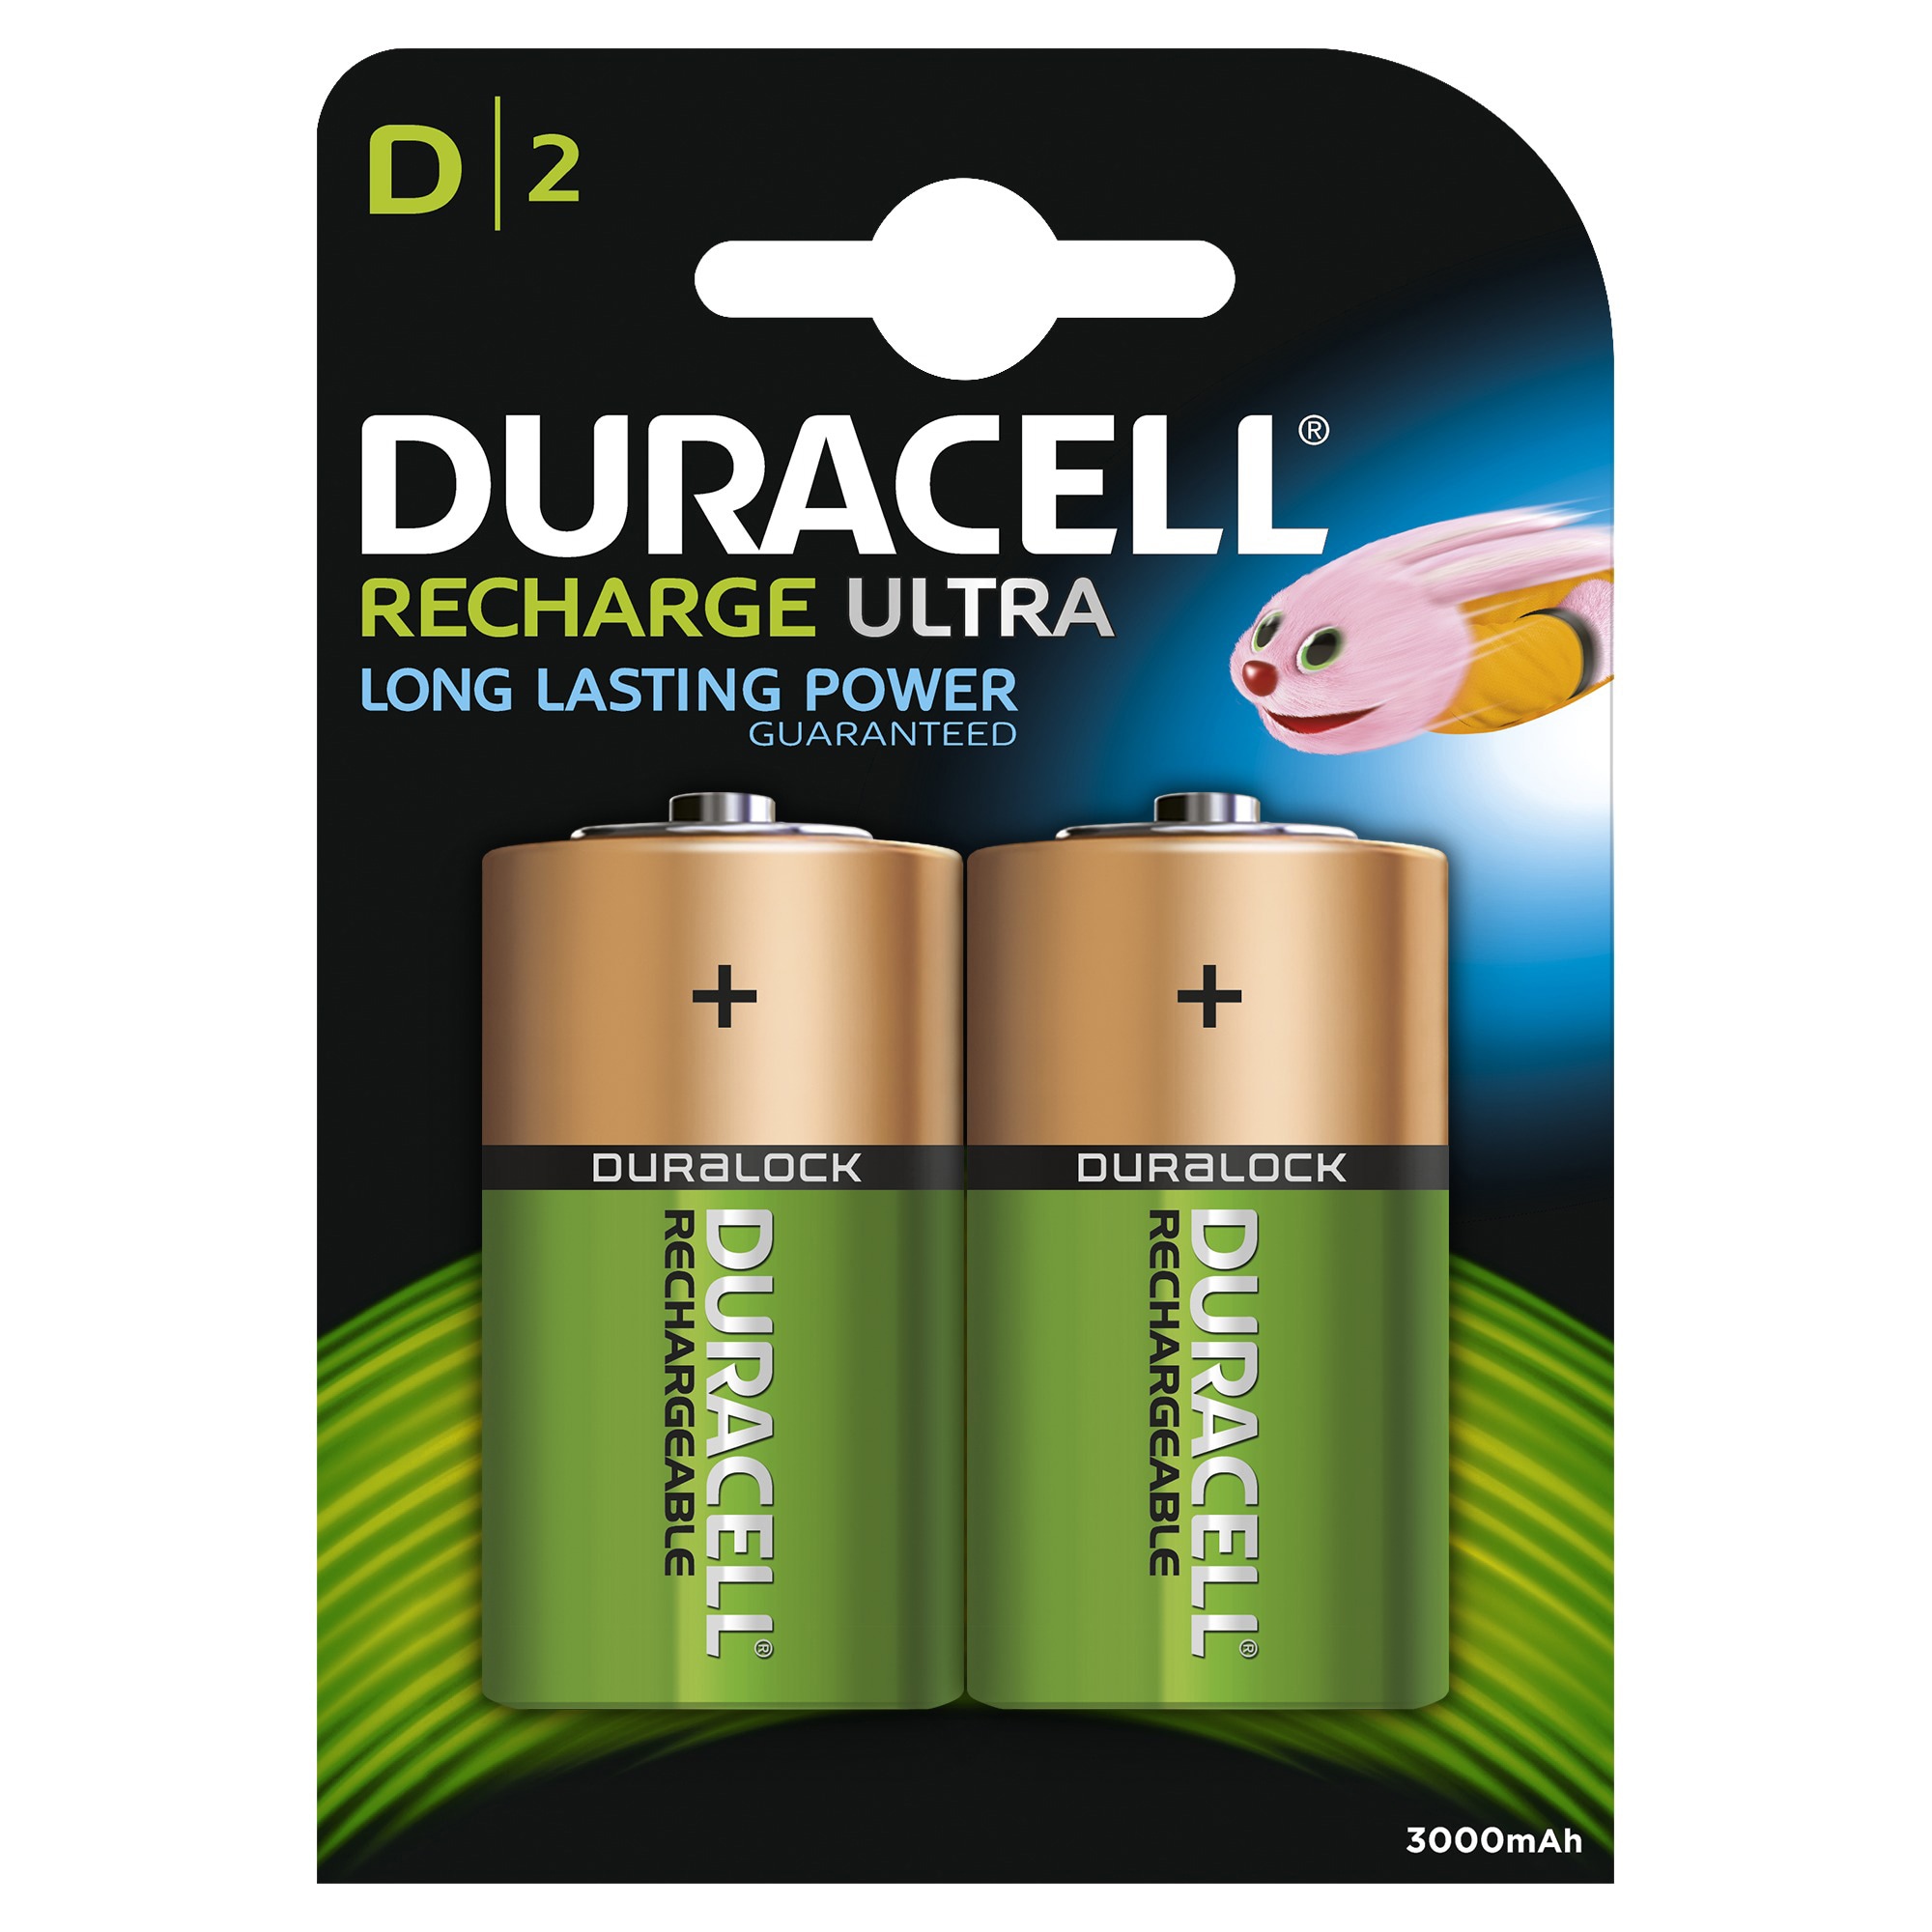 Duracell Recharge Plus D 3000mAh batterier - 2 stk thumbnail